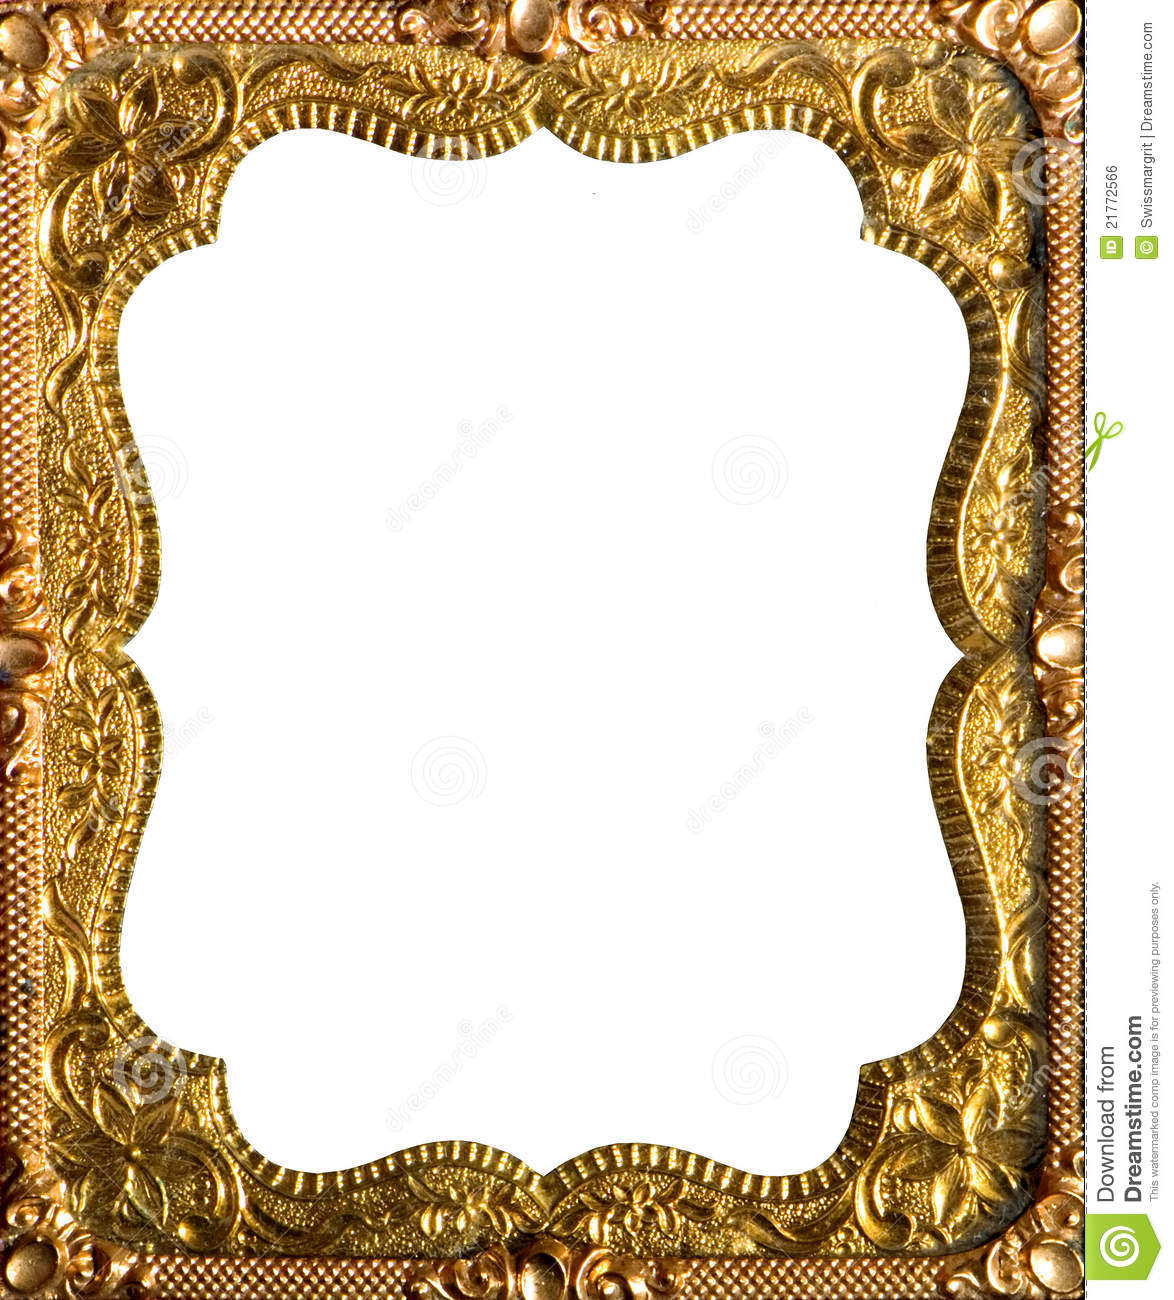 Ornate gold frame .